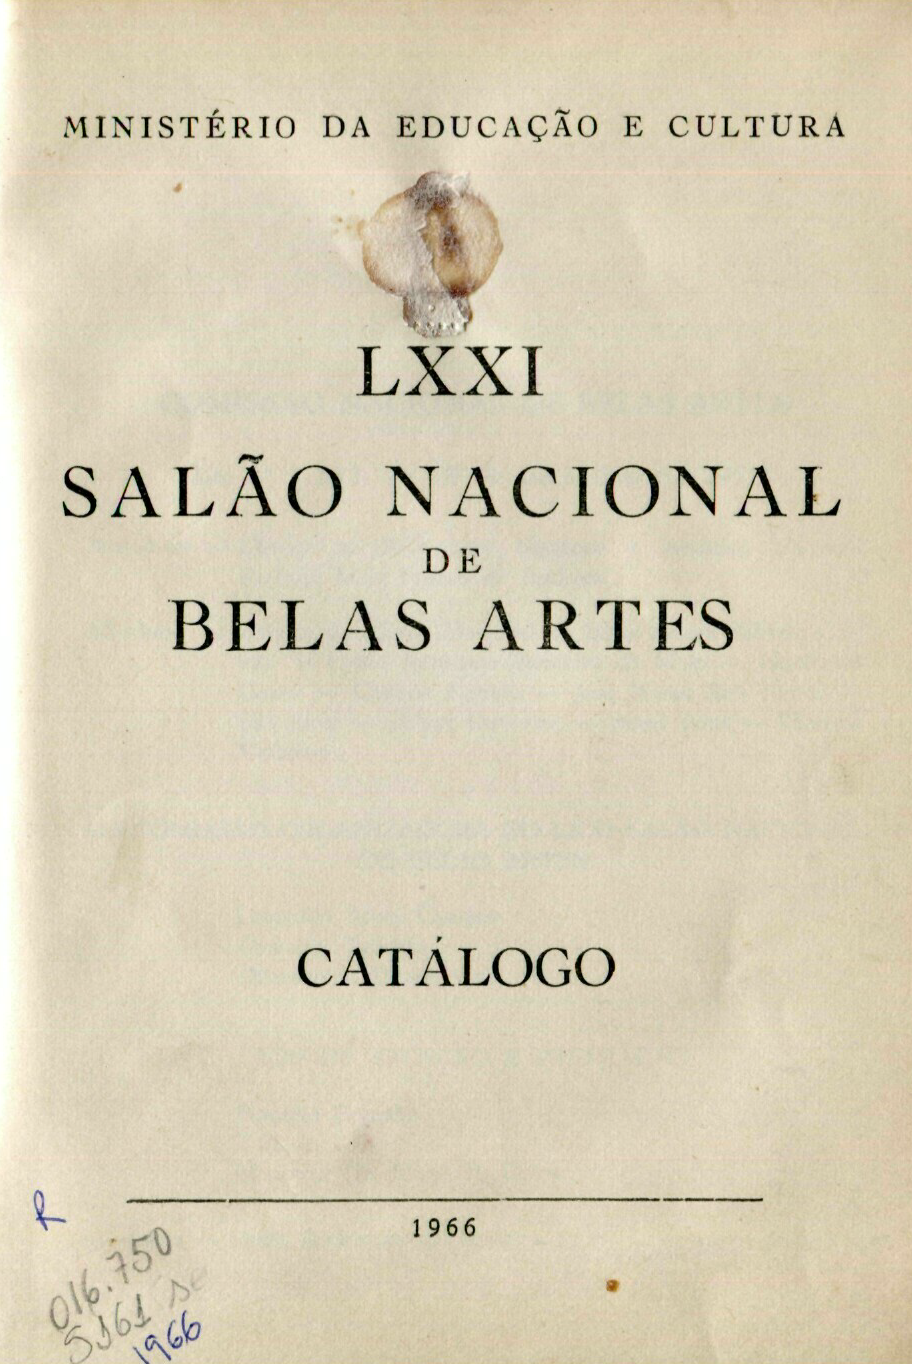 Capa do Livro LXXI Salão Nacional de Belas Artes - Catálogo 1966